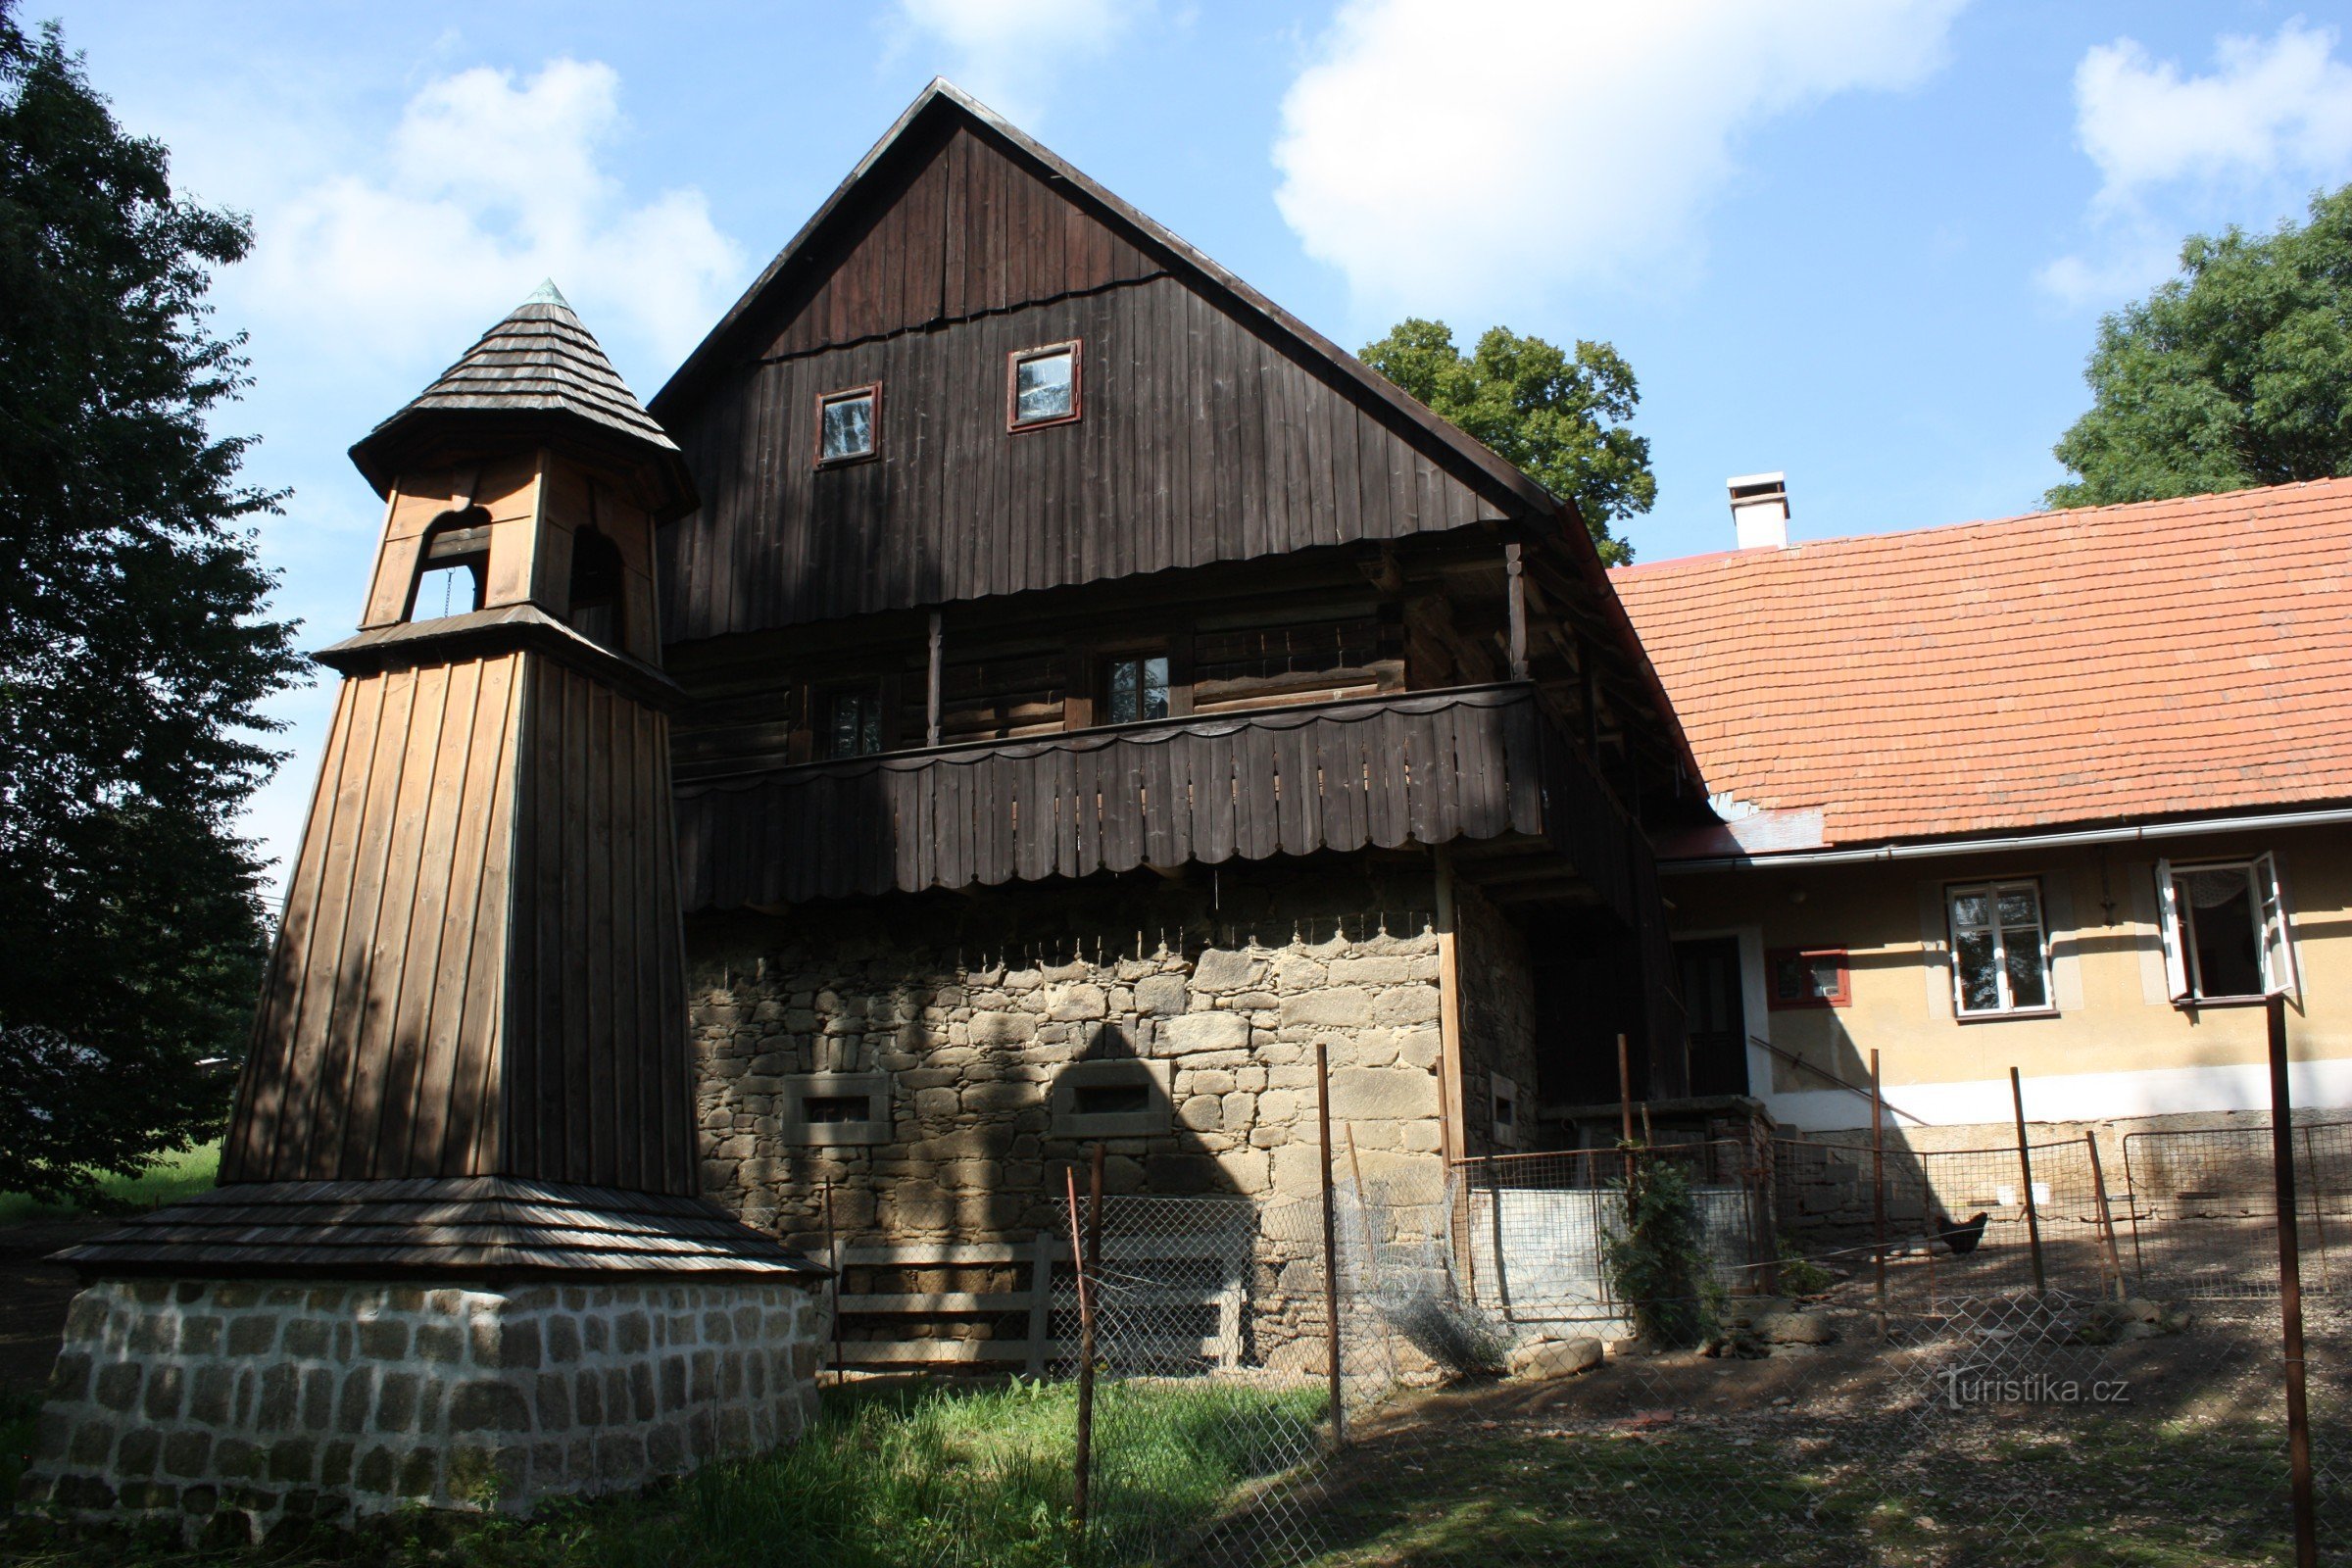 Hölzerner Glockenturm in Škodějov in der Region Semila